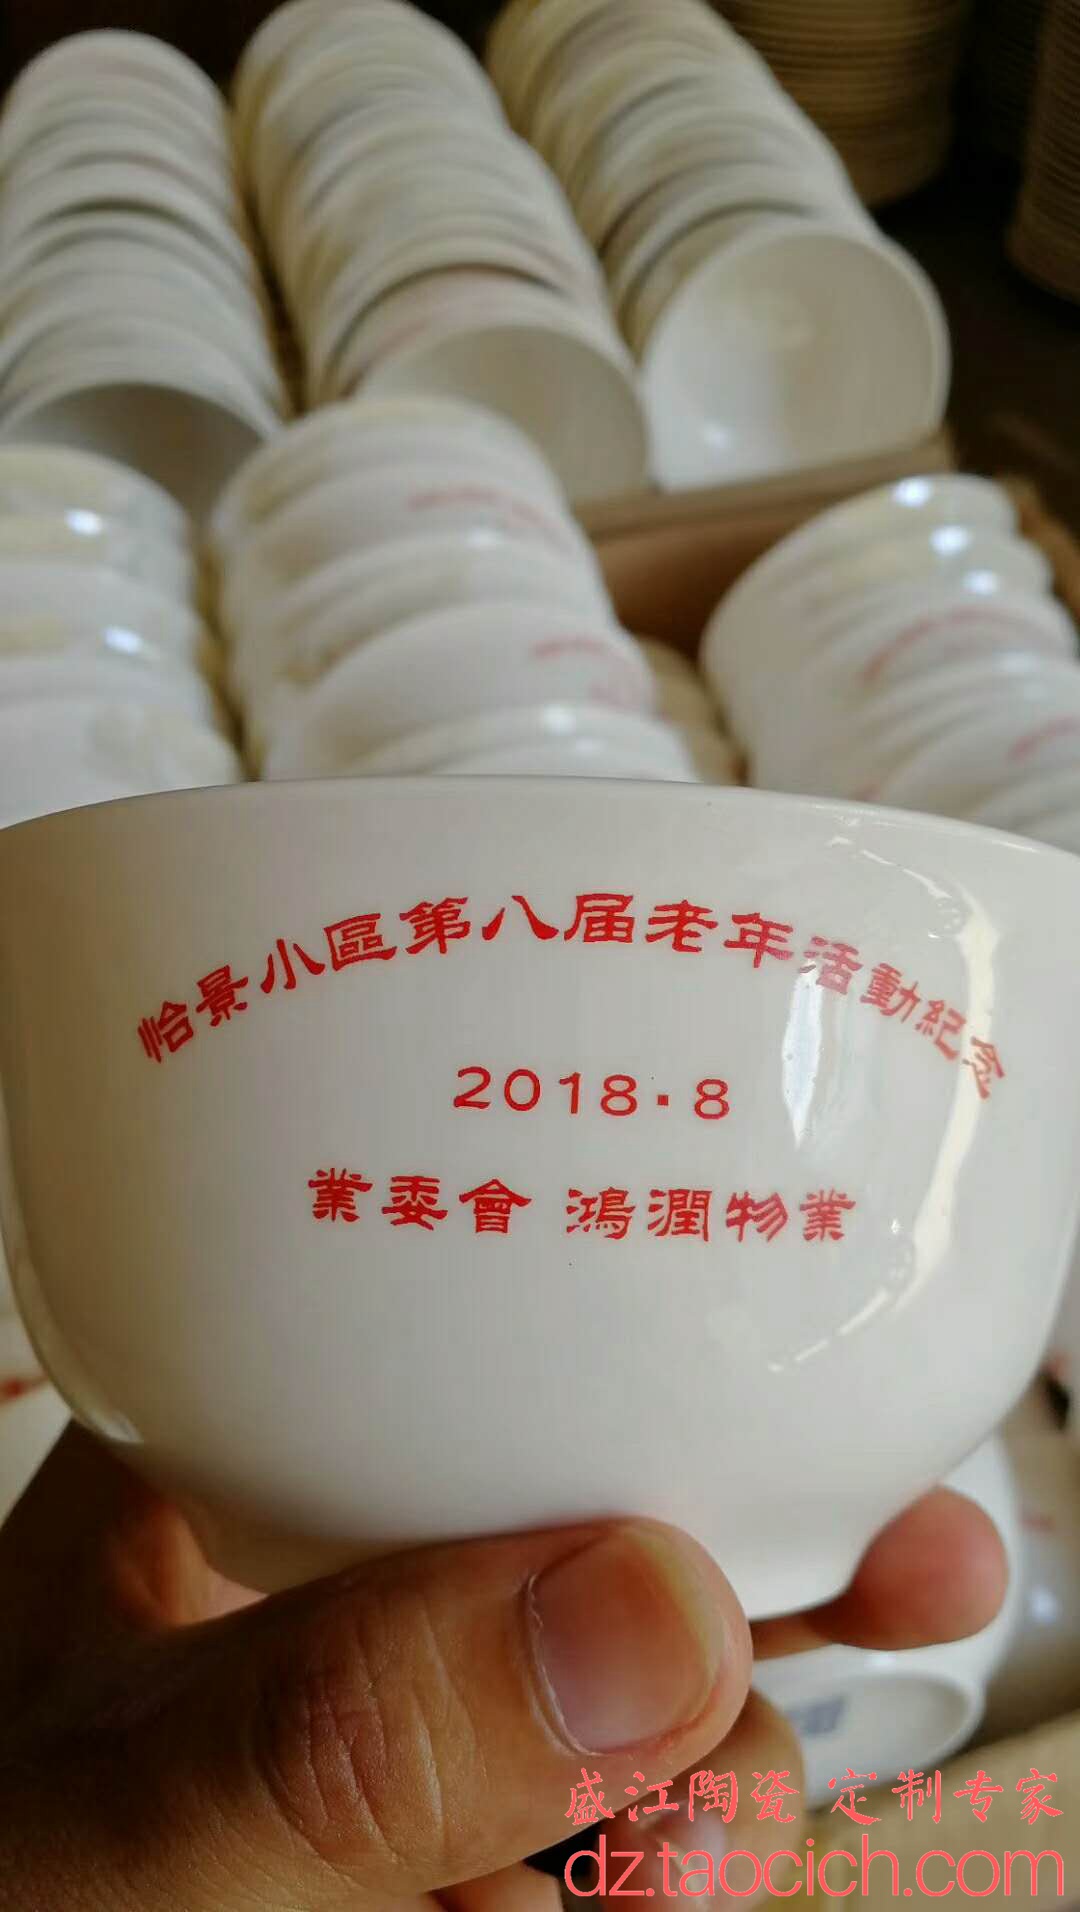 盛江陶瓷 怡景小区老年活动纪念碗定制成功案例